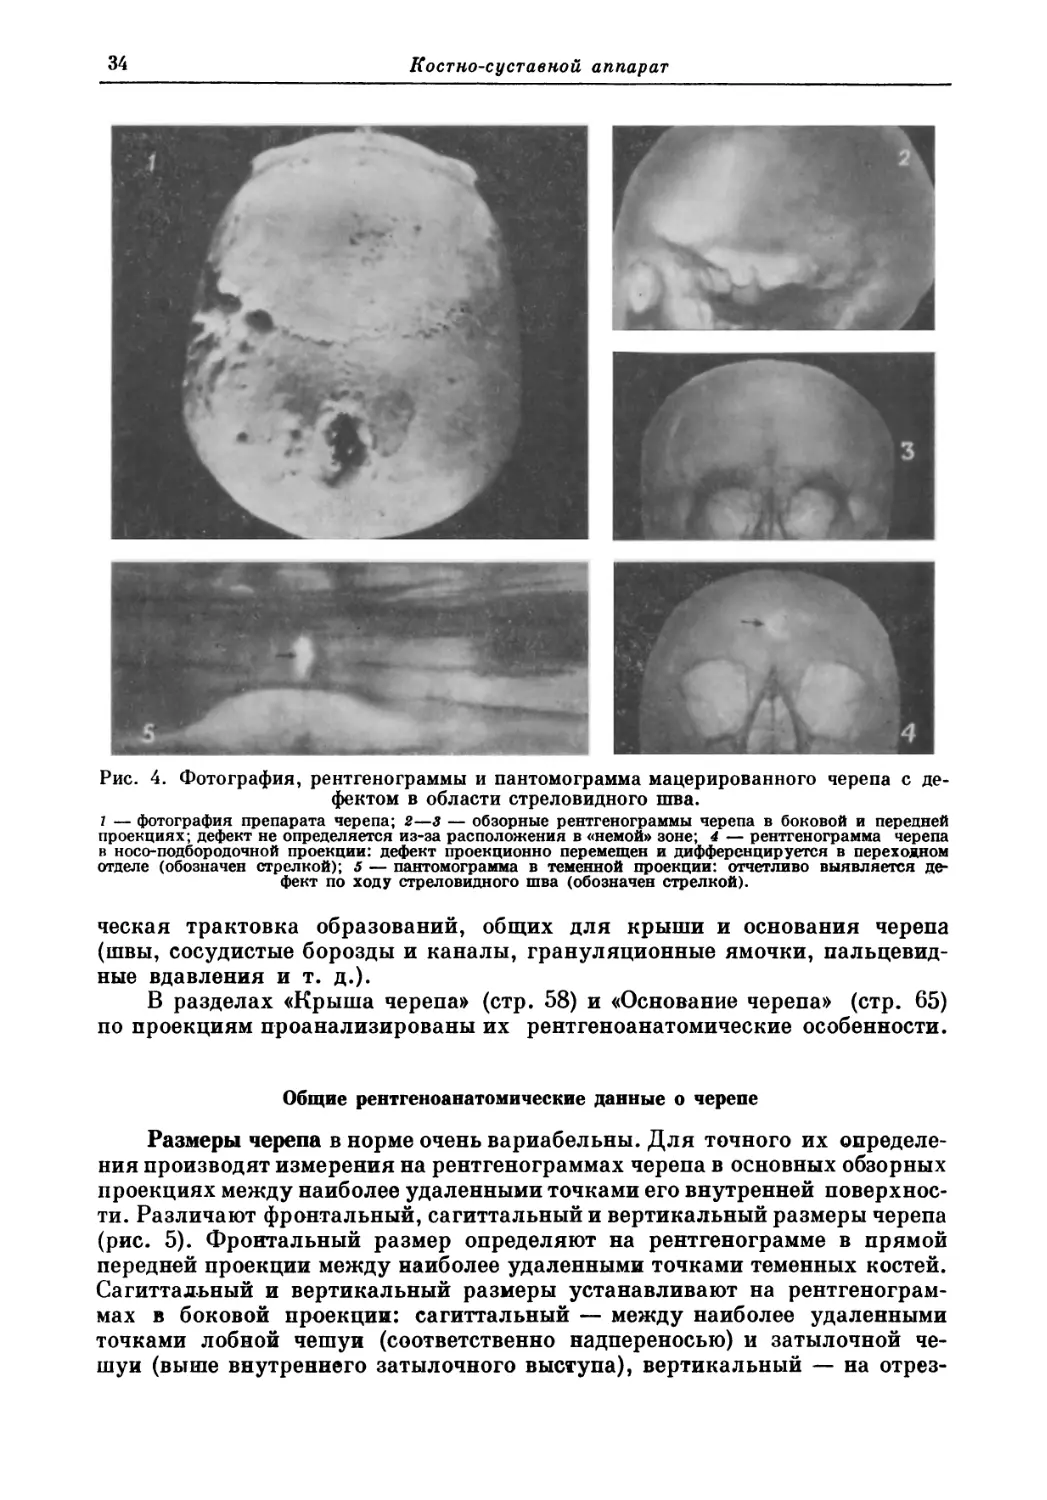 Общие рентгеноанатомические данные о черепе